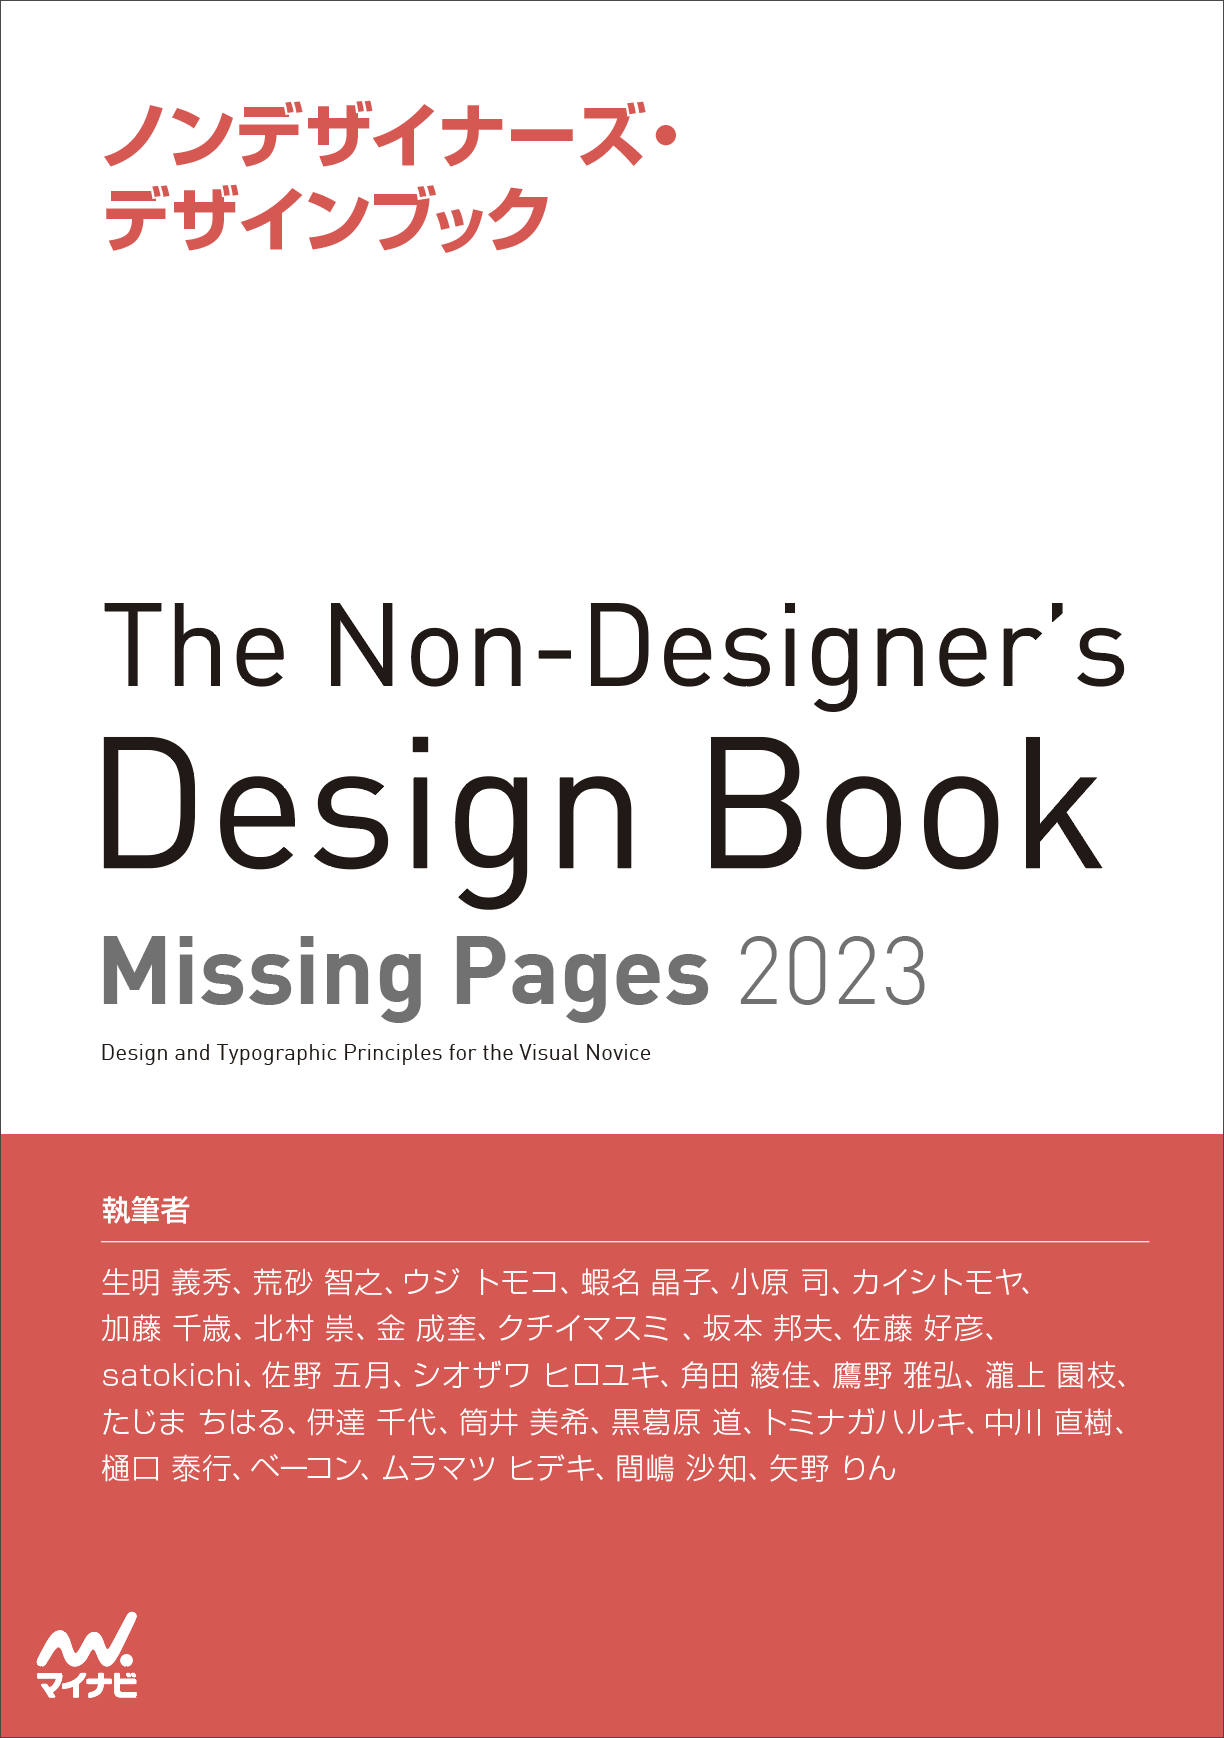 ノンデザイナーズ・デザインブック』25周年キャンペーンを行います